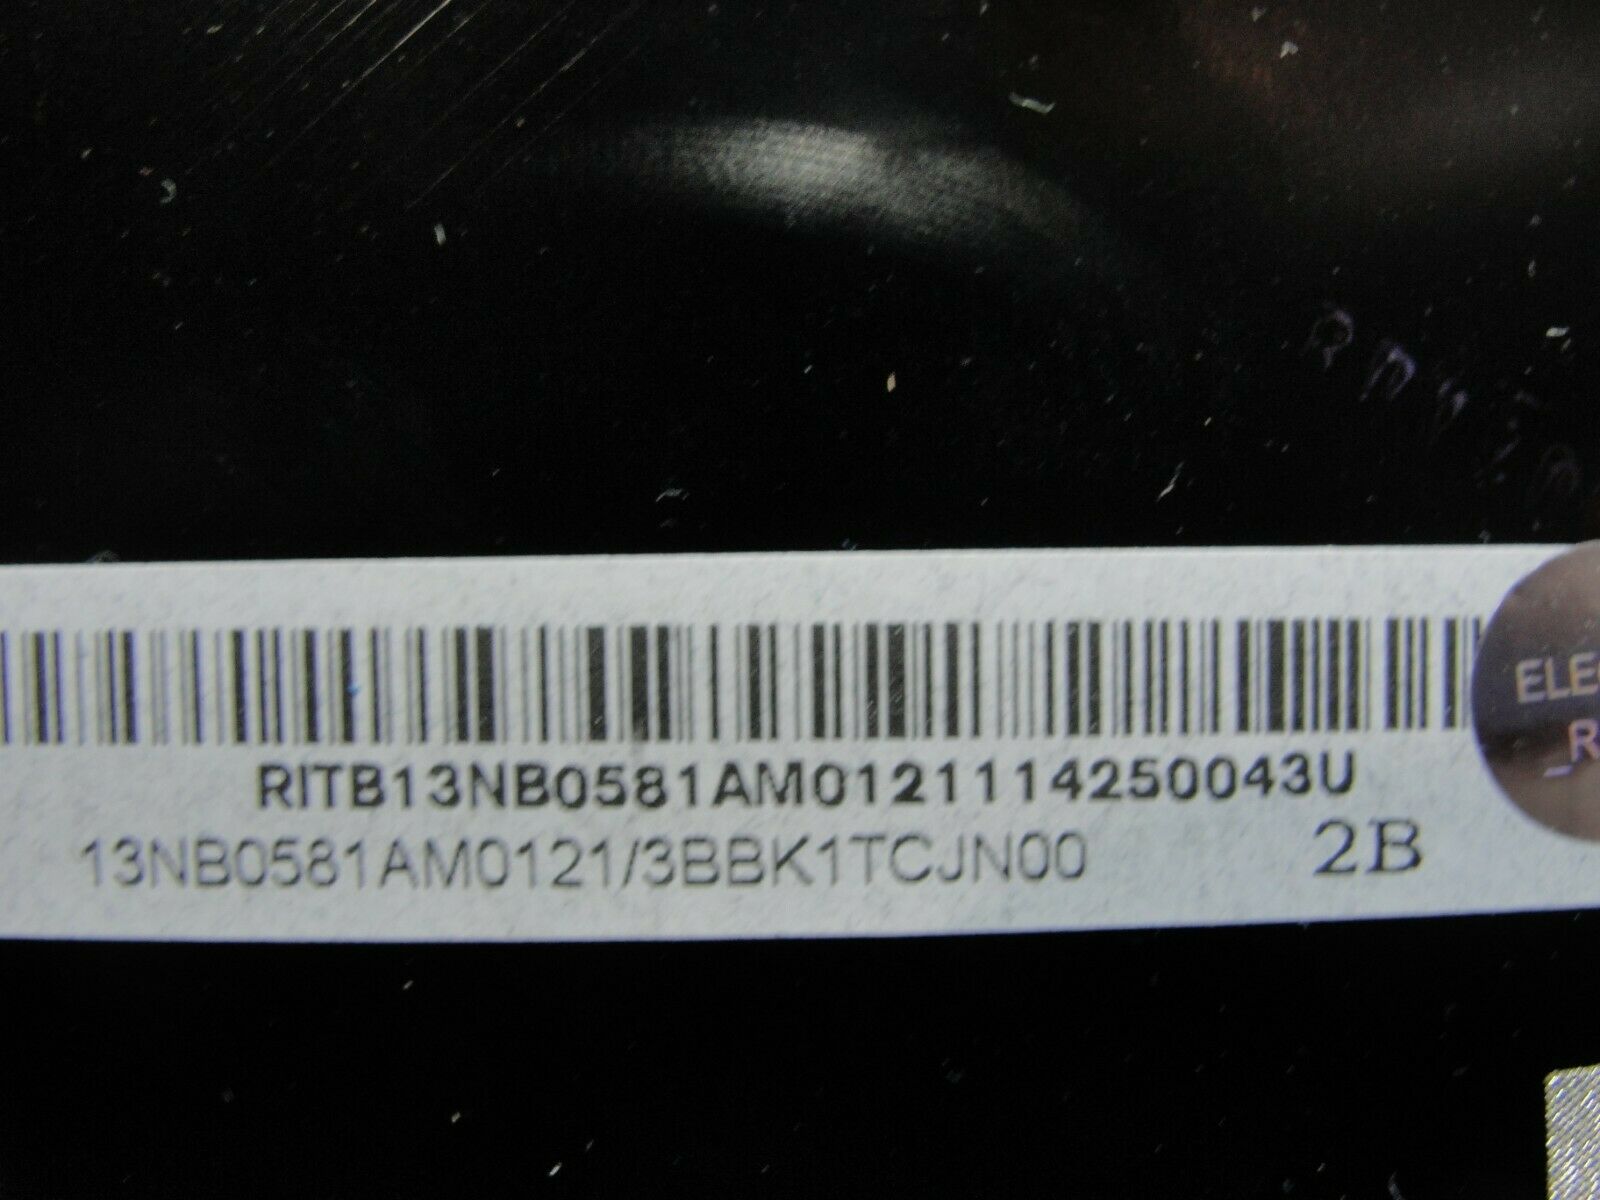 Asus Notebook Q502LA-BBI5T12 15.6